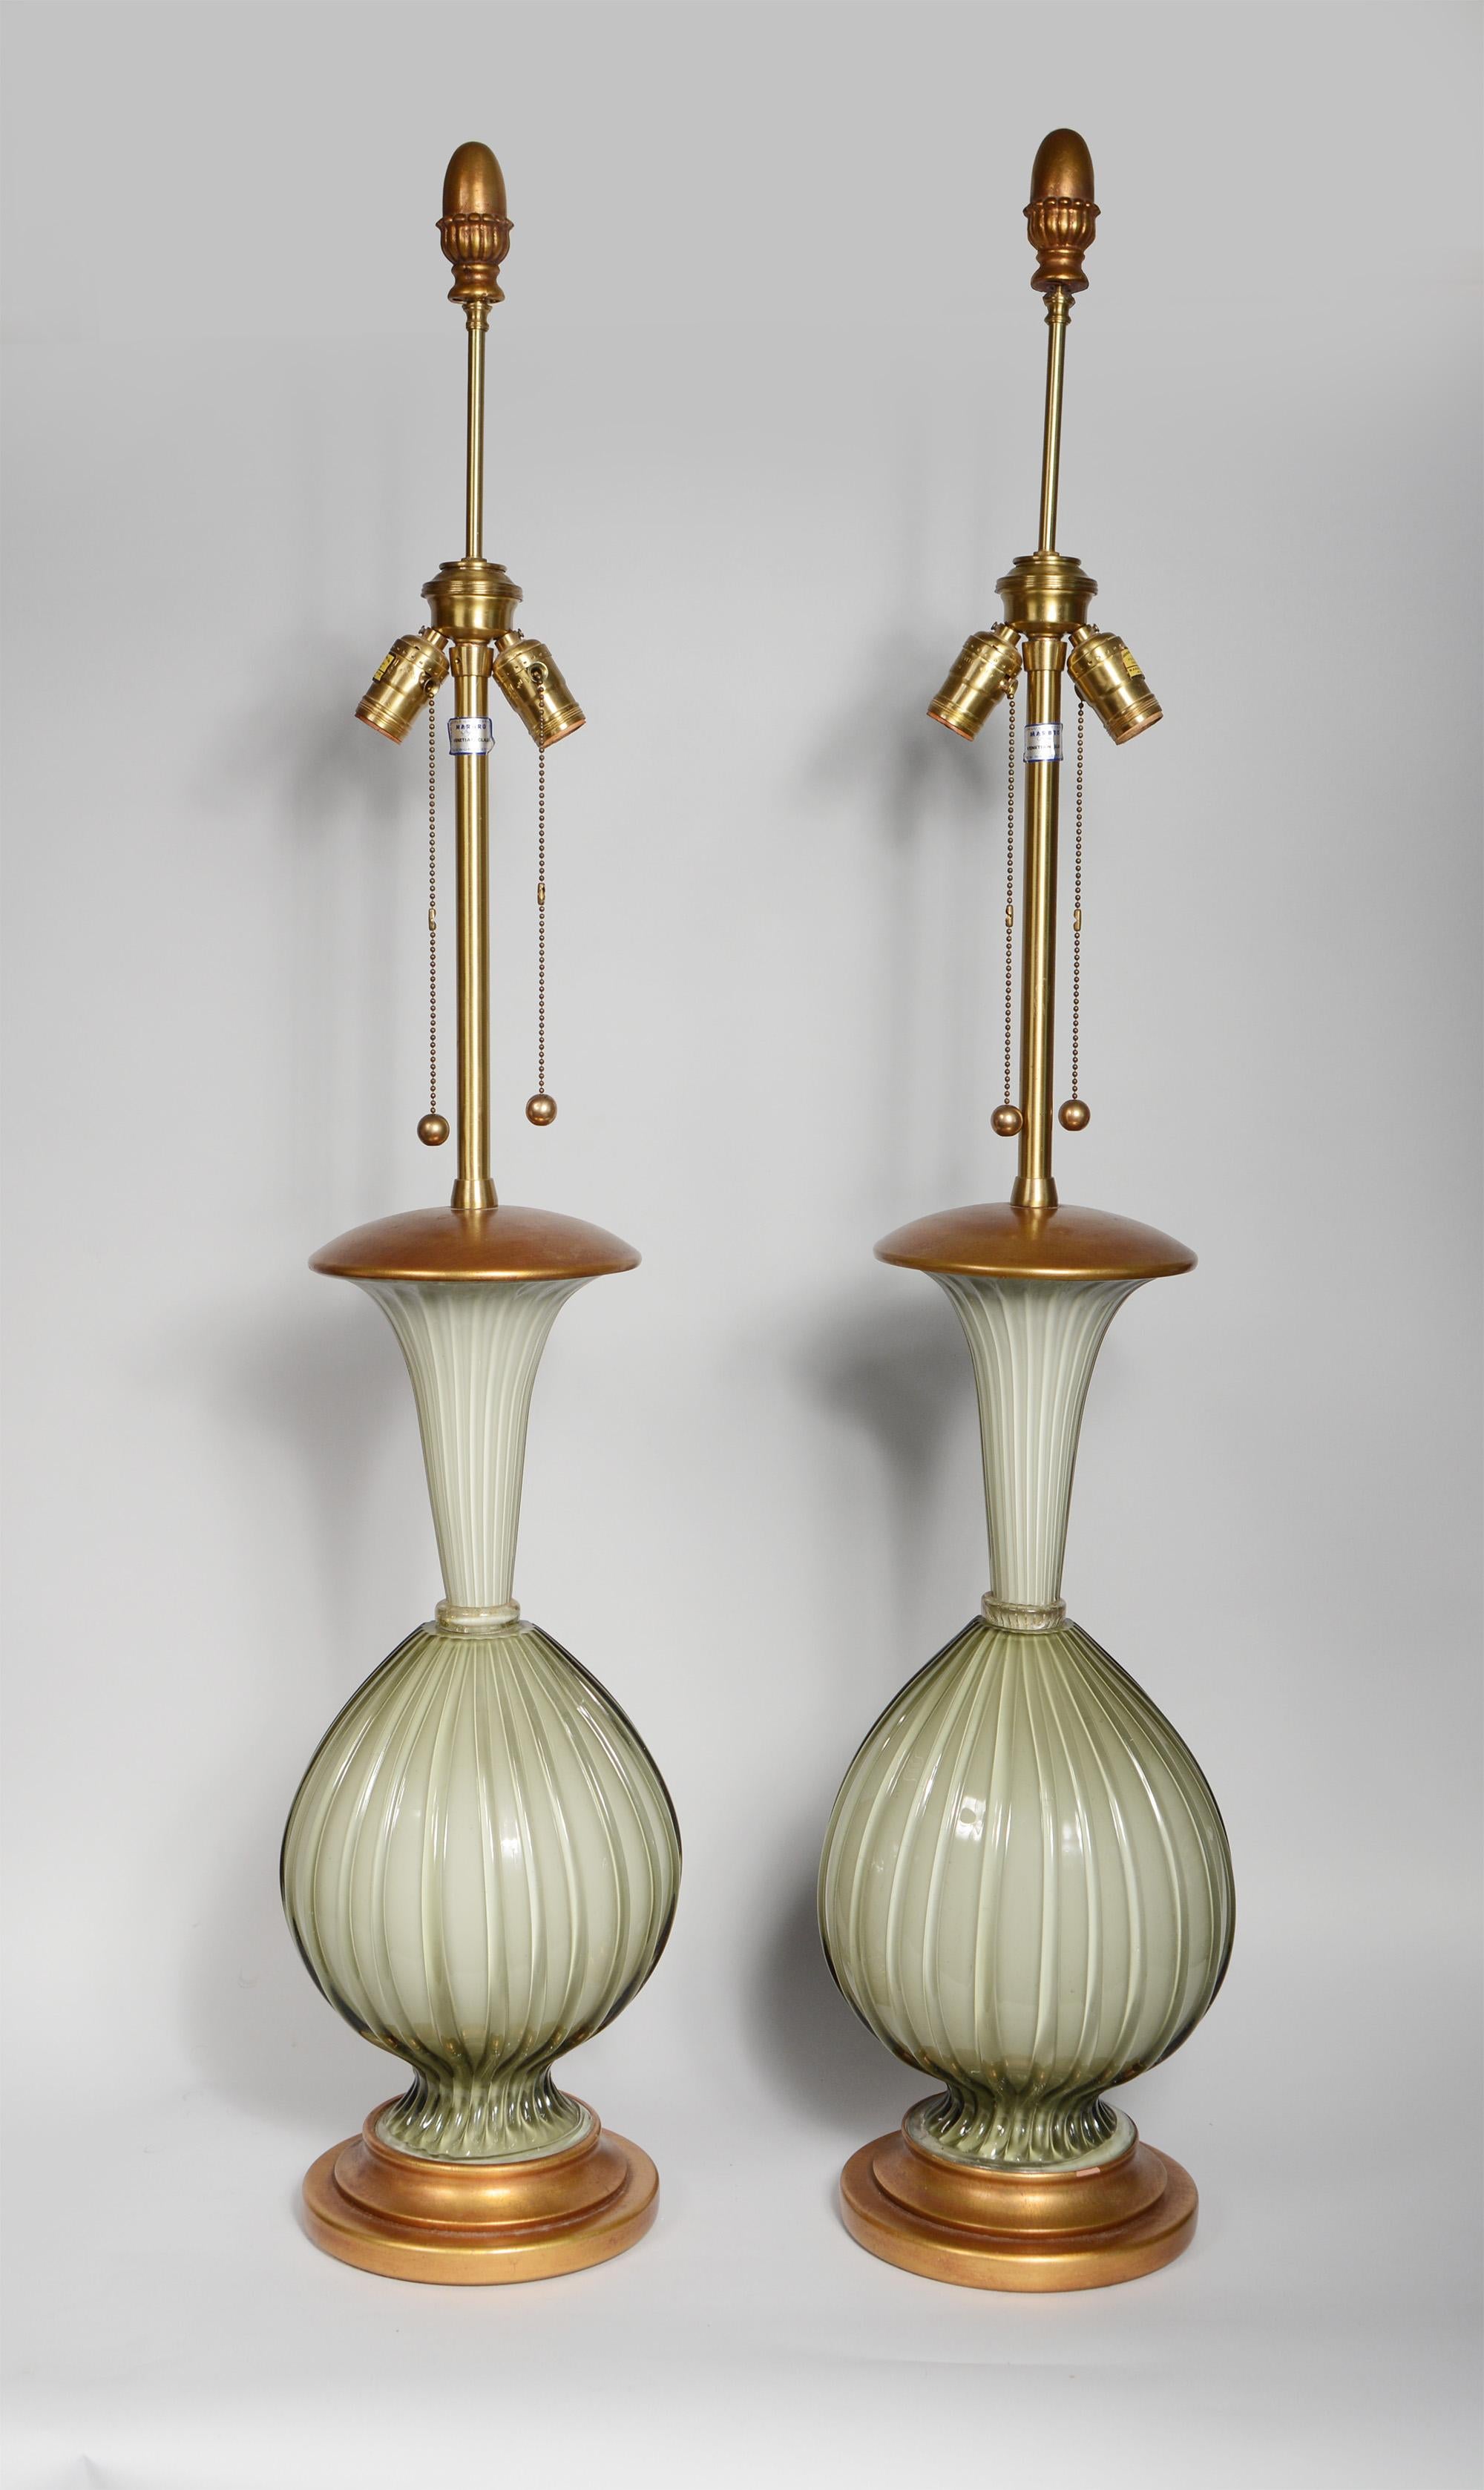 Zwei hohe Tischlampen aus venezianischem Glas von Marbro Lamp Company. Diese haben ein warmes, graues, geripptes Glas, das weiß überzogen ist. Sie haben vergoldete Holzsockel und -kappen. Die vergoldeten Endstücke sind original. Am Sockel einer der